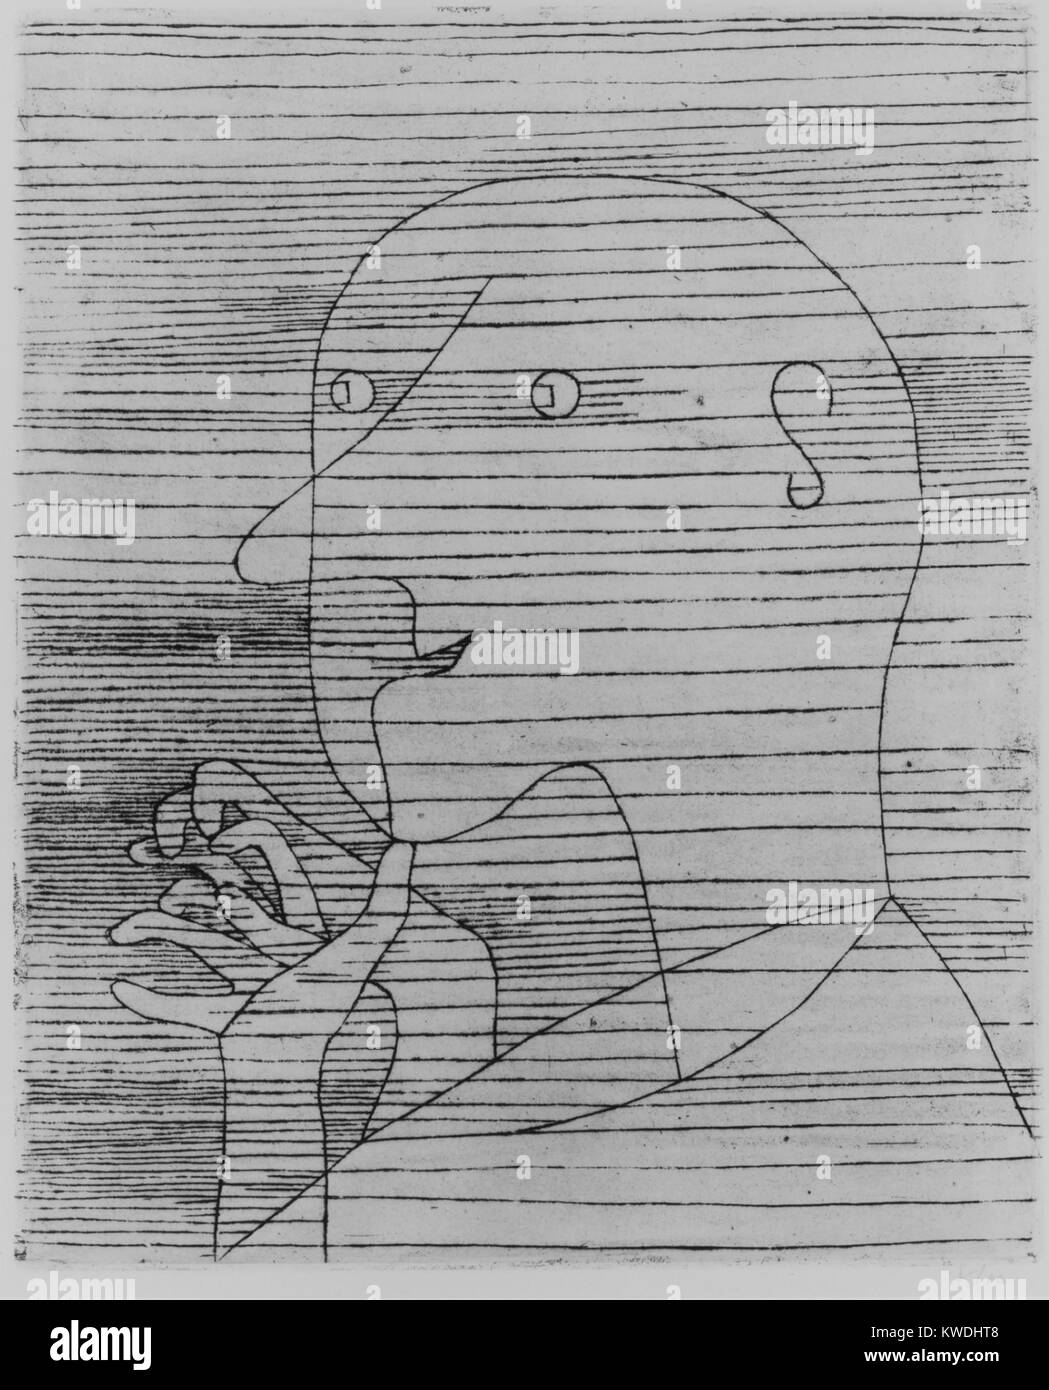 Viejo contando, por Paul Klee, 1929, Suiza, grabado de impresión. Títulos Klees son a menudo importantes para apreciar con sus imágenes. Esto lleva a la meditación del envejecimiento y mortalidad (BSLOC 2017 7 25) Foto de stock